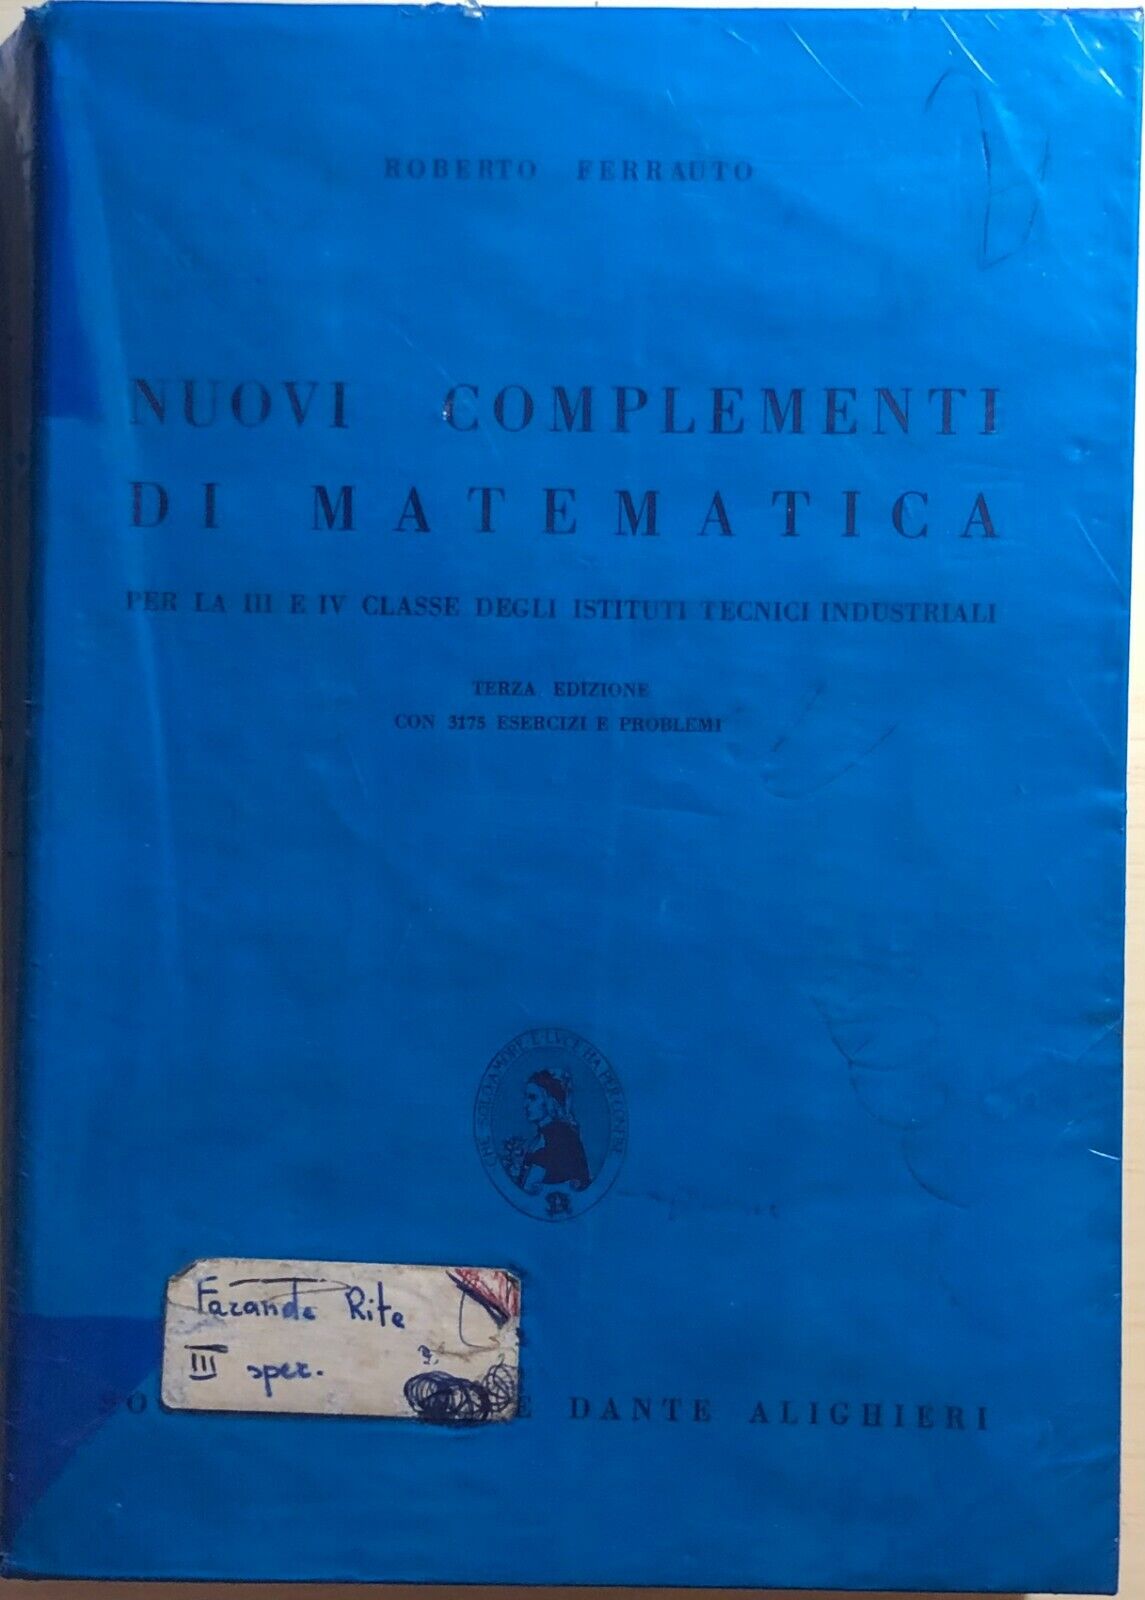 Nuovi complementi di matematica di Roberto Ferrauto,  1978,  Societ? Editrice Da